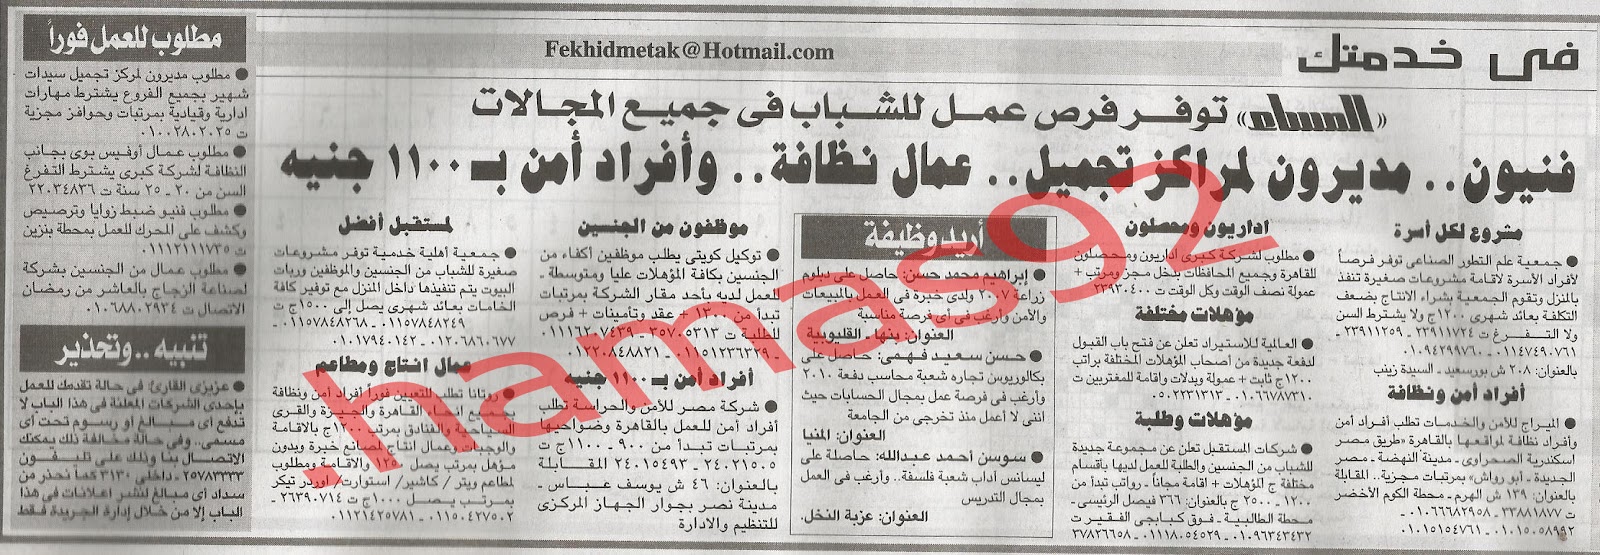 وظائف مصر| اعلانات وظائف جريدة المساء الاحد 26\8\2012 %D8%A7%D9%84%D9%85%D8%B3%D8%A7%D8%A1+1